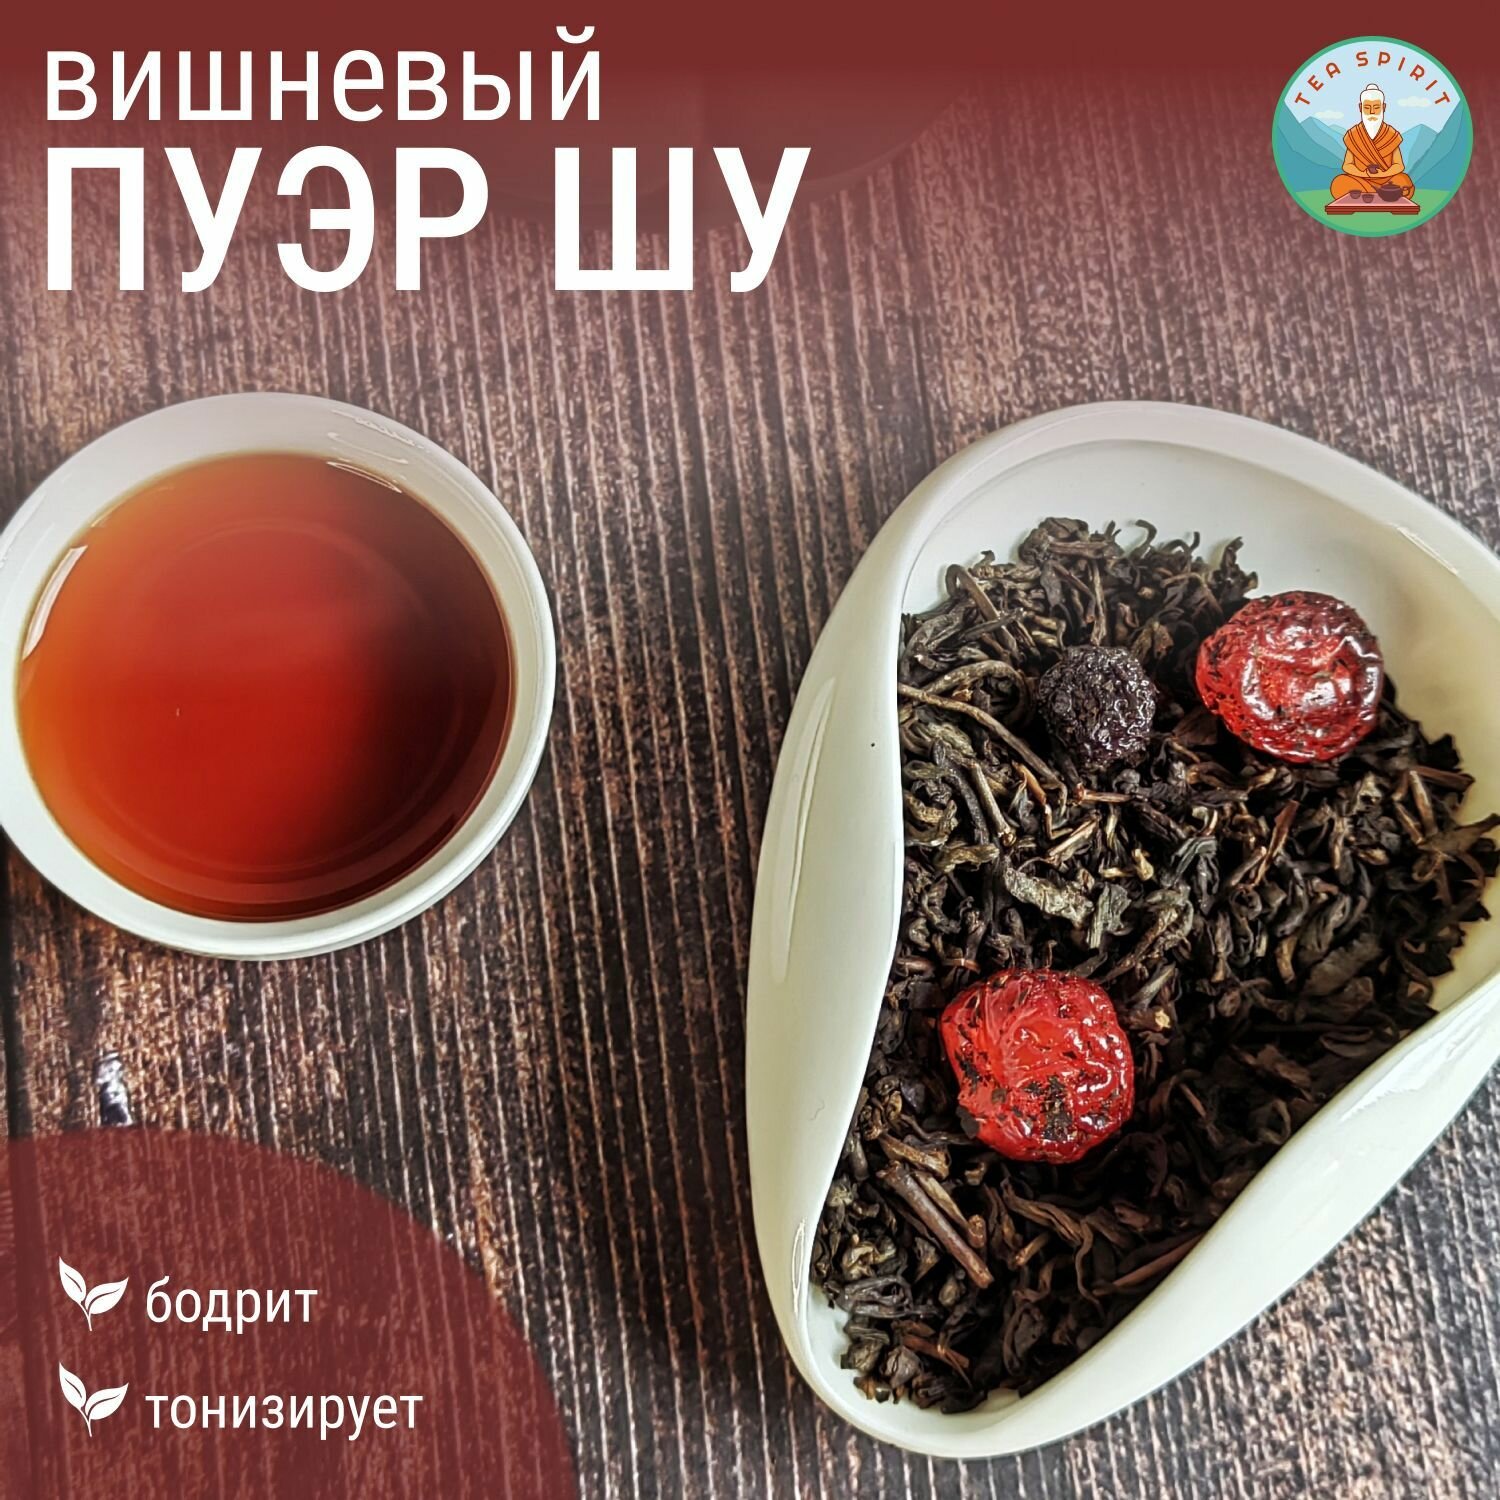 Чай черный пуэр ШУ вишневый / Китайский чай, чай листовой, чай с вишней, 50 г